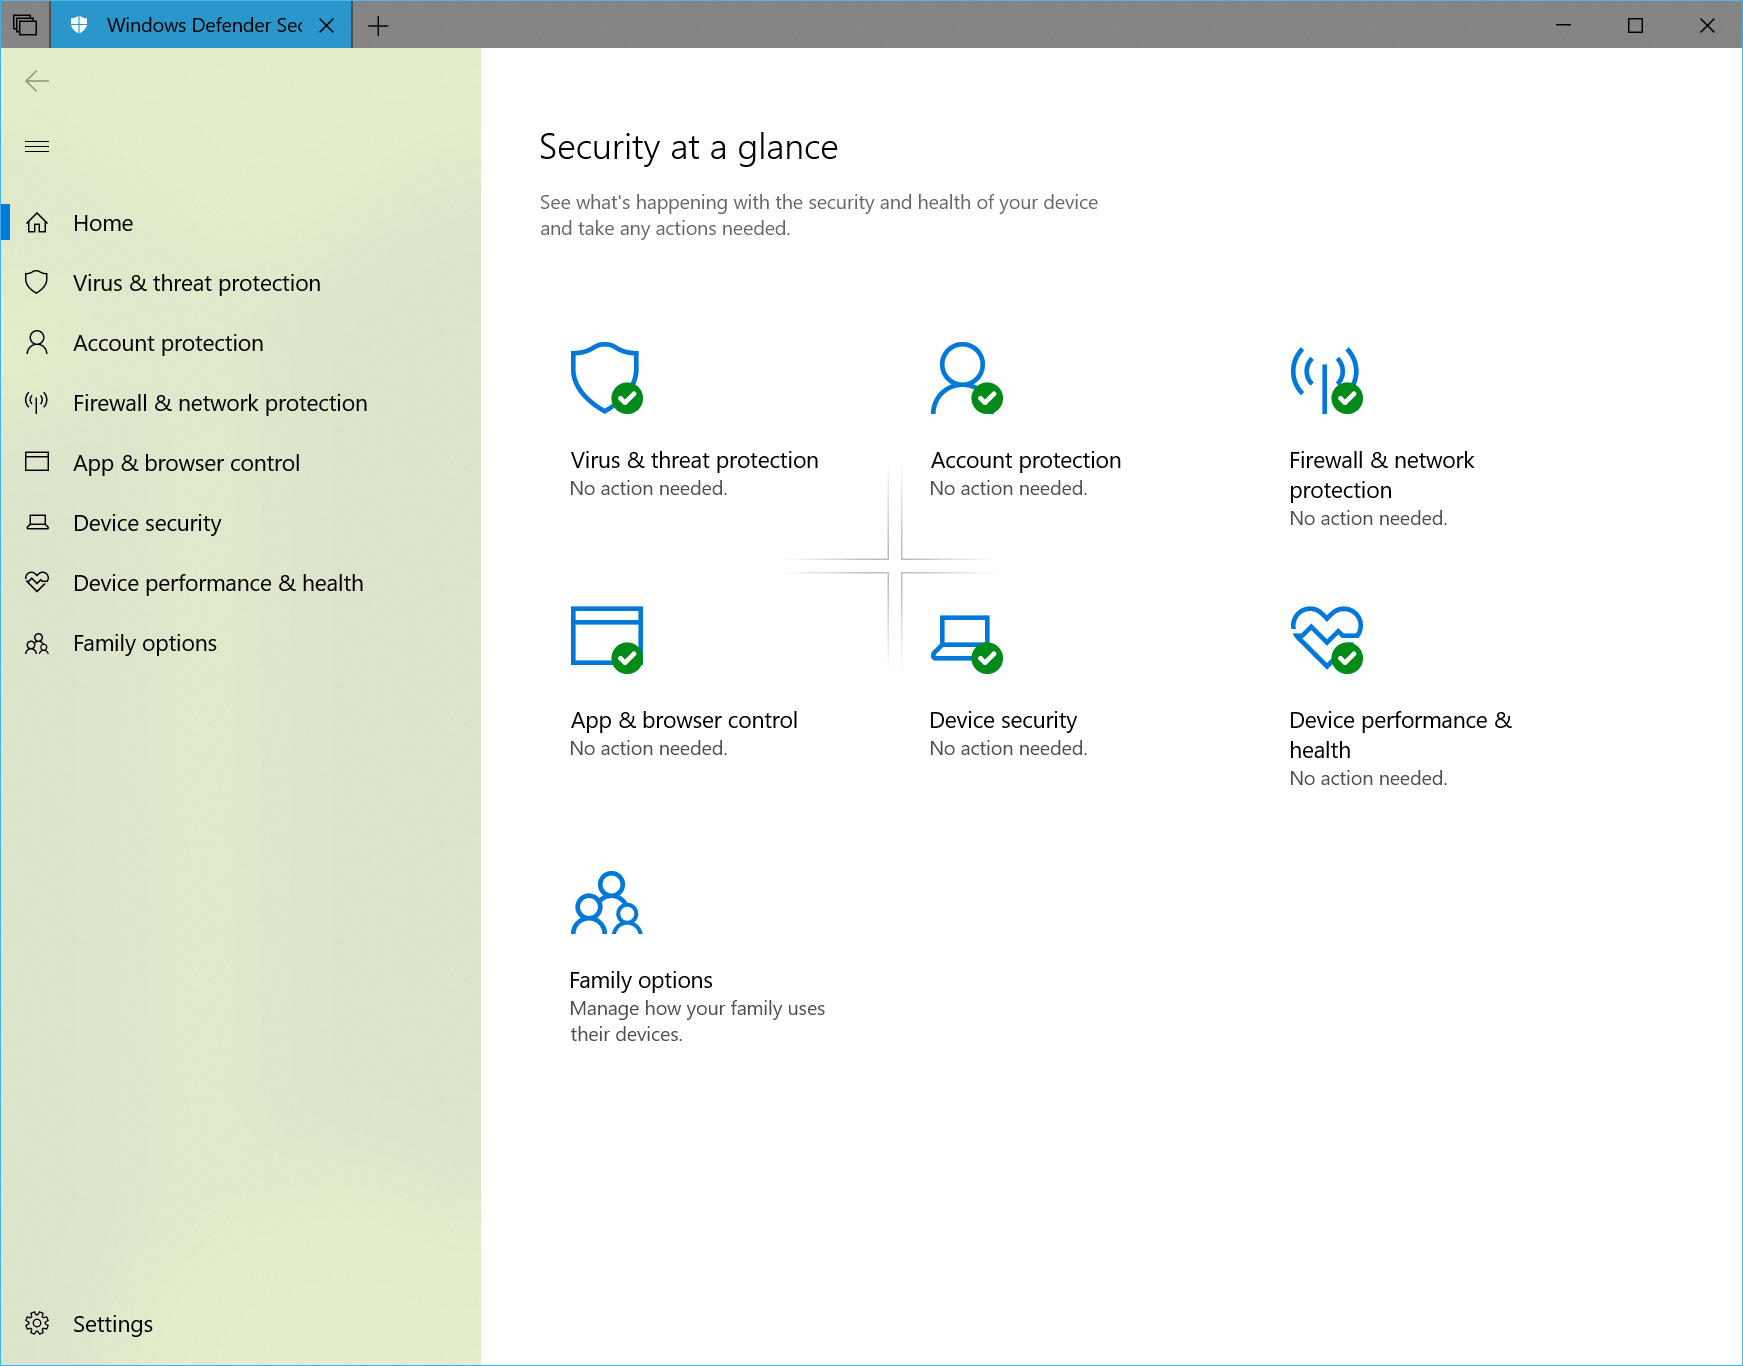 Microsoft выпускает новую сборку Windows 10 Insider Preview Build 17650 (RS5) Skip Ahead для участников программы предварительной оценки